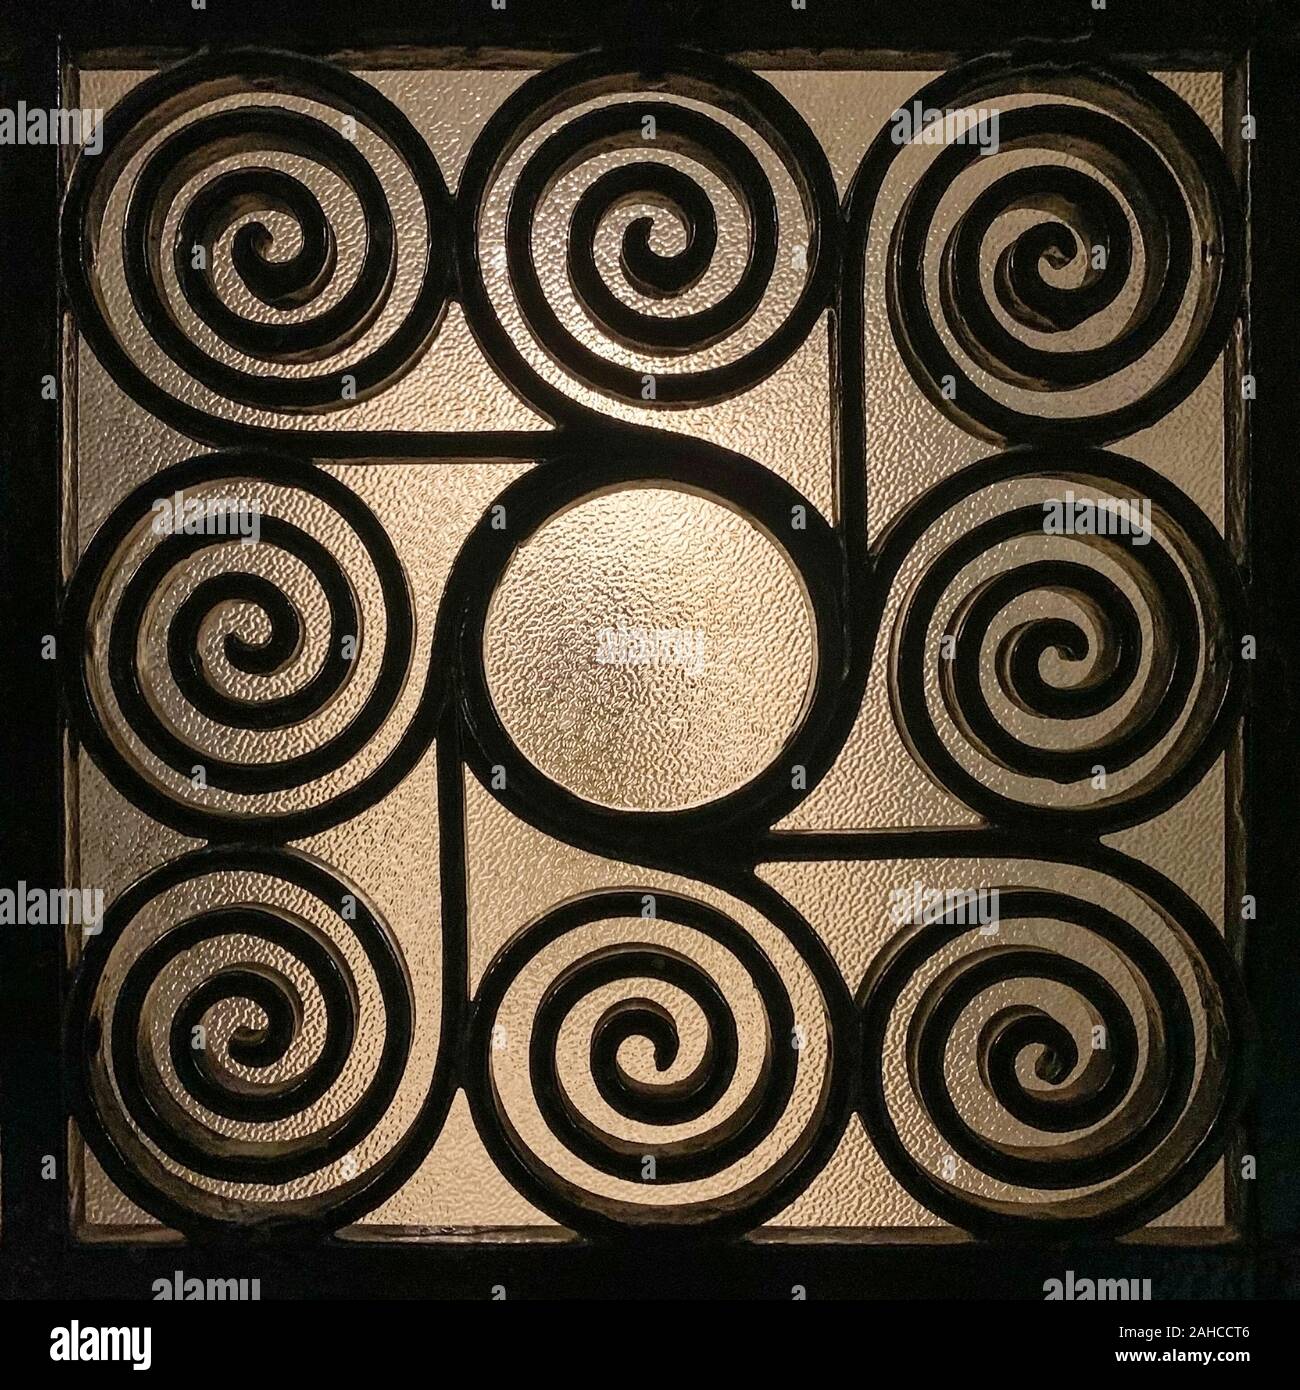 Greco battuto griglia di ferro, ornata con riccamente intrecciata e spirali con un vetro smerigliato in background, che è leggermente illuminato. Foto Stock